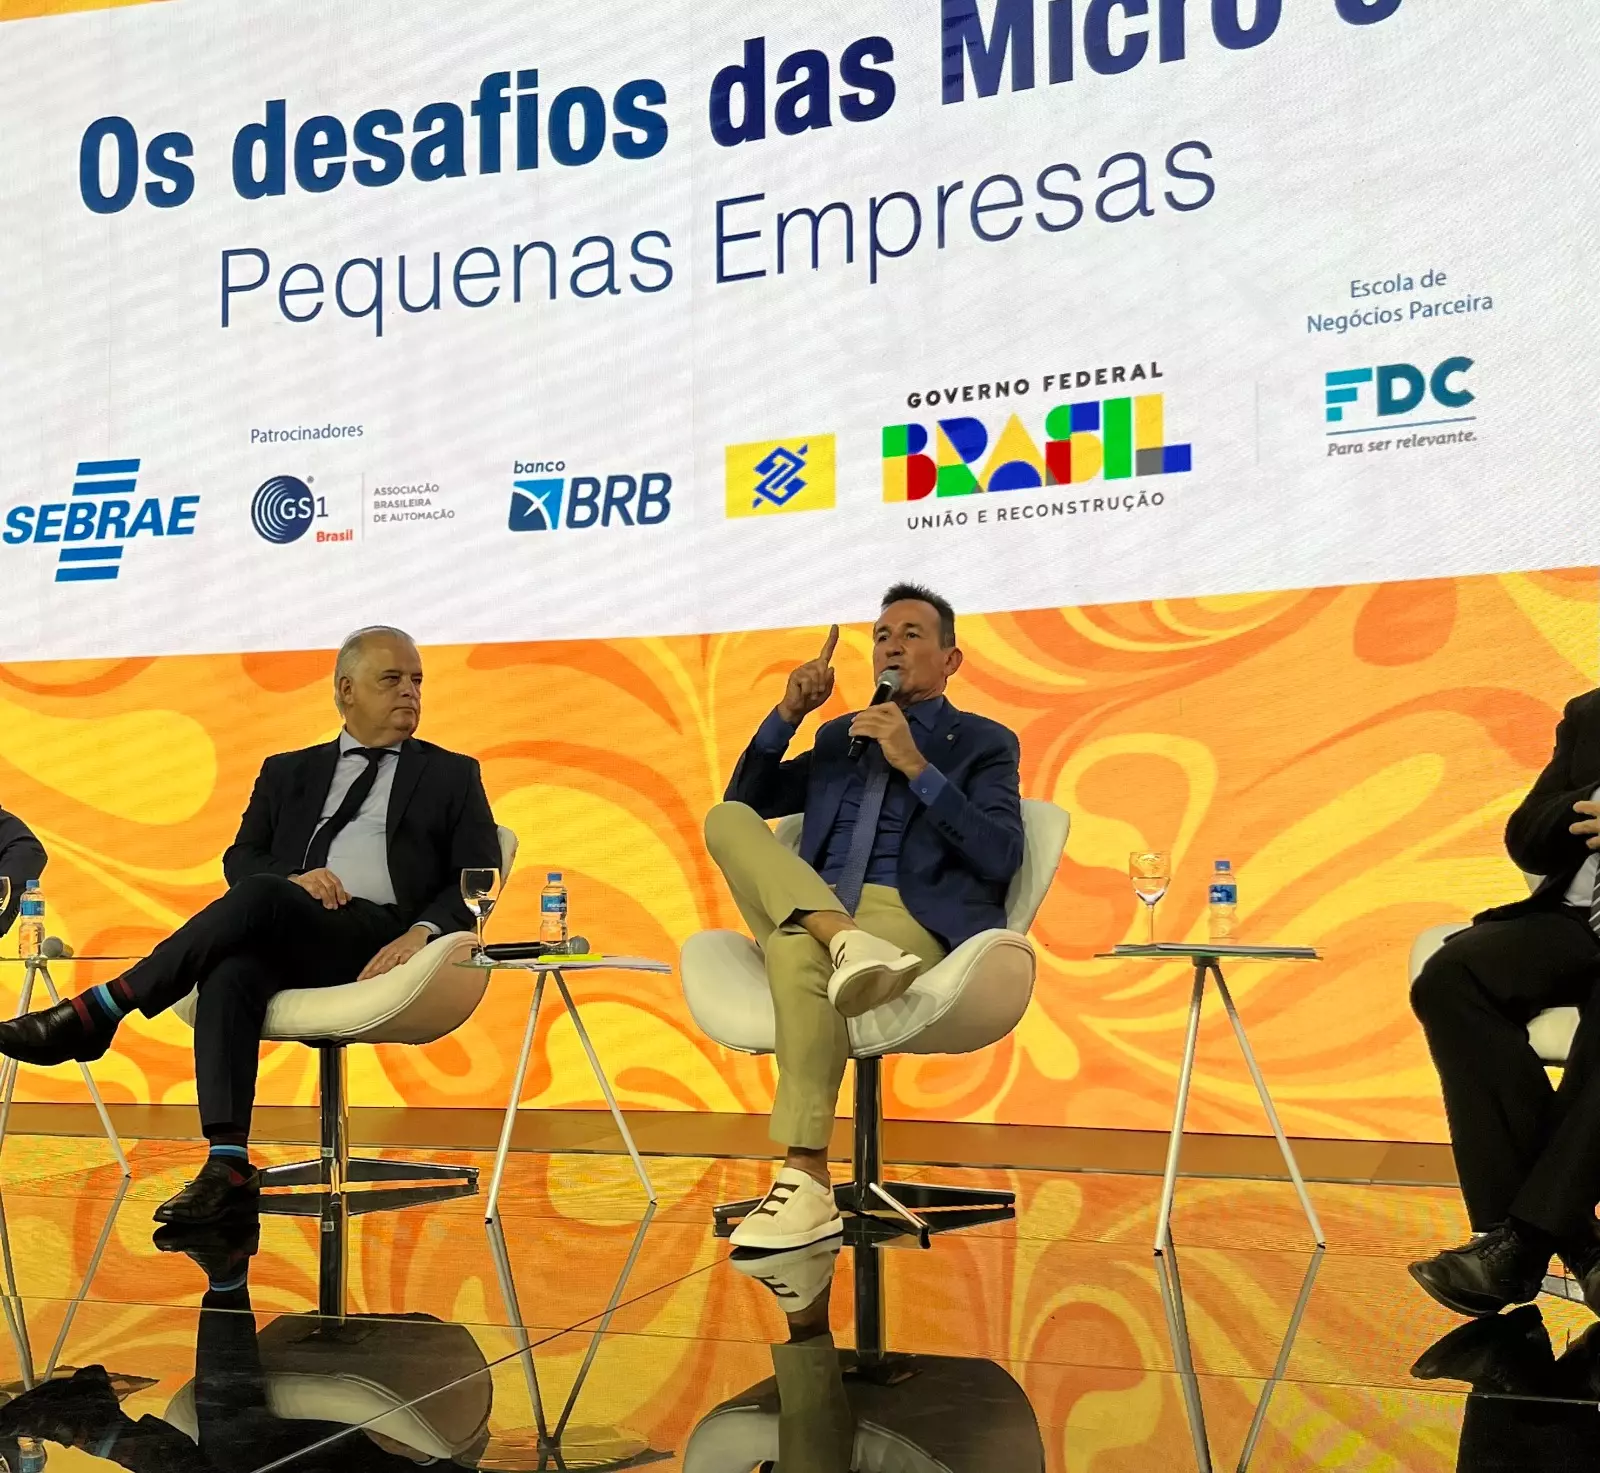 Projeto de Jorge Goetten, “Desenrola” para empresas ganha reforço em Brasília